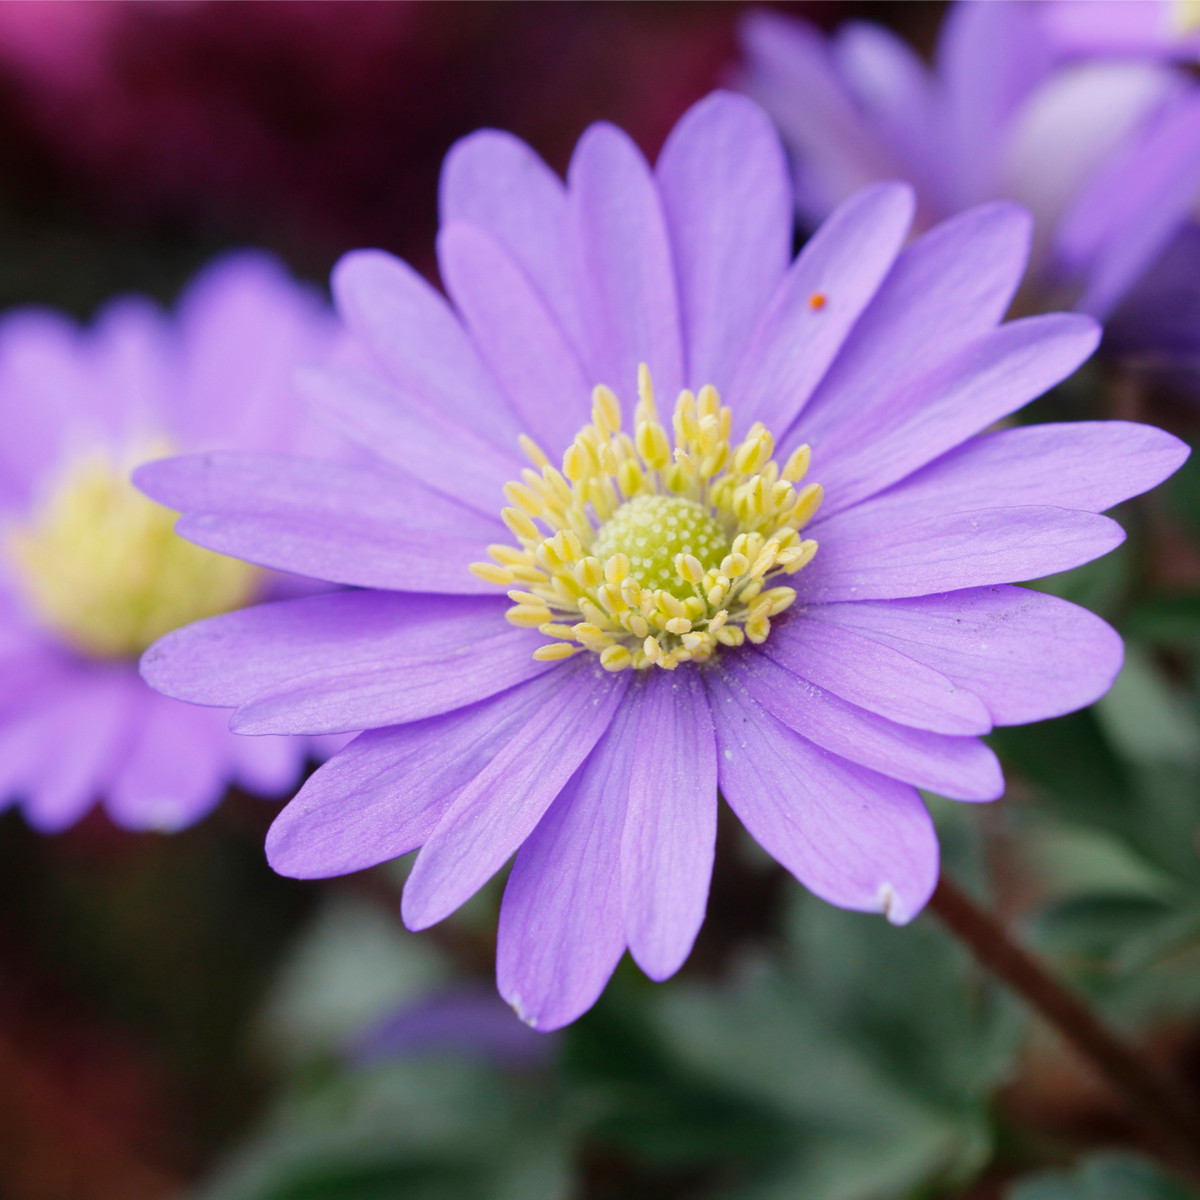 Sasanka vábná Violet Star - Anemone blanda - hlízy sasanky - 3 ks